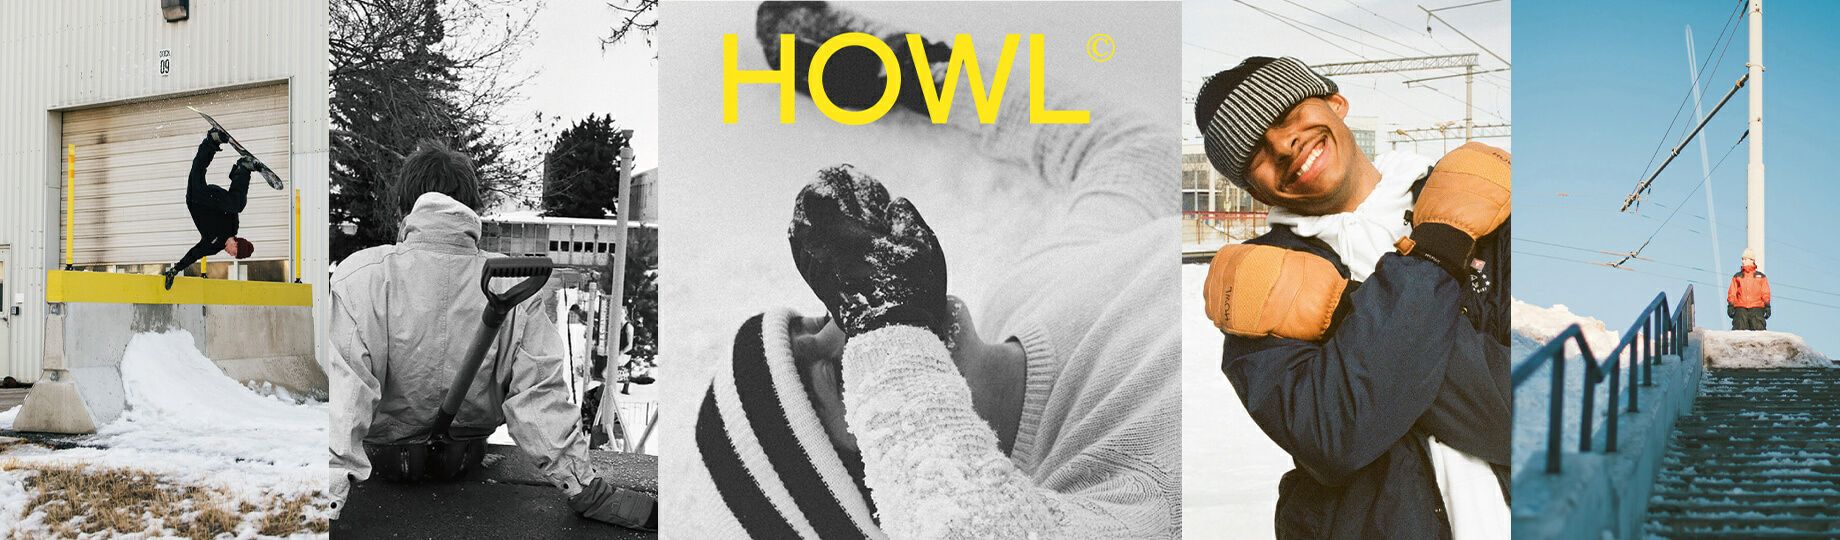 howl publc スノーパンツ Lサイズ